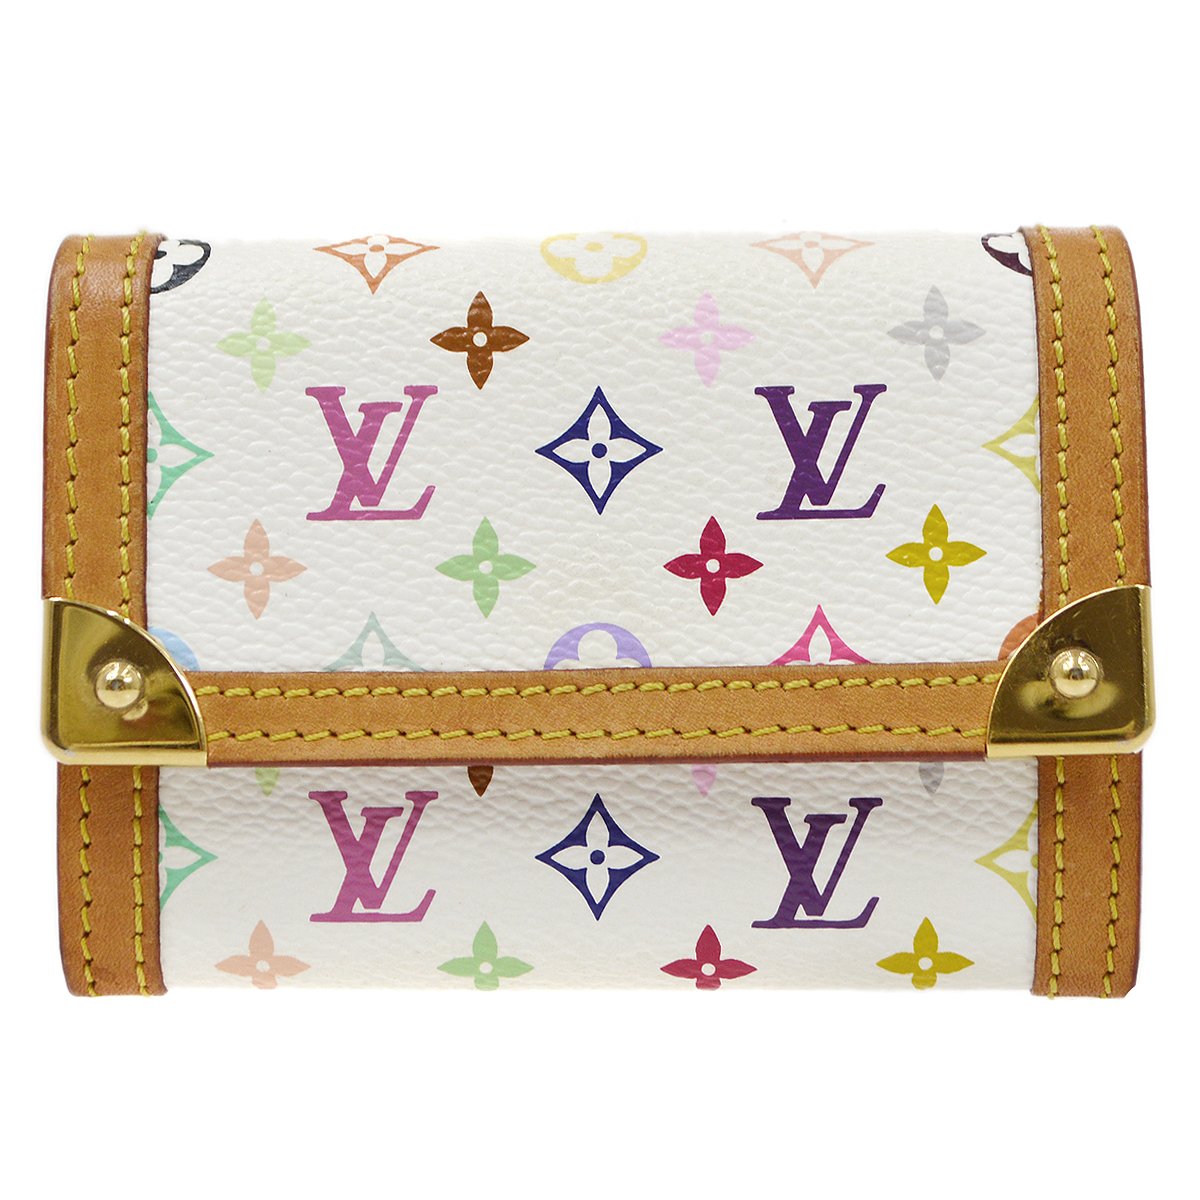 Louis Vuitton, Bags, Louis Vuitton Monogram Multicolor Portemonnaie Plat  Coin Purse Wallet